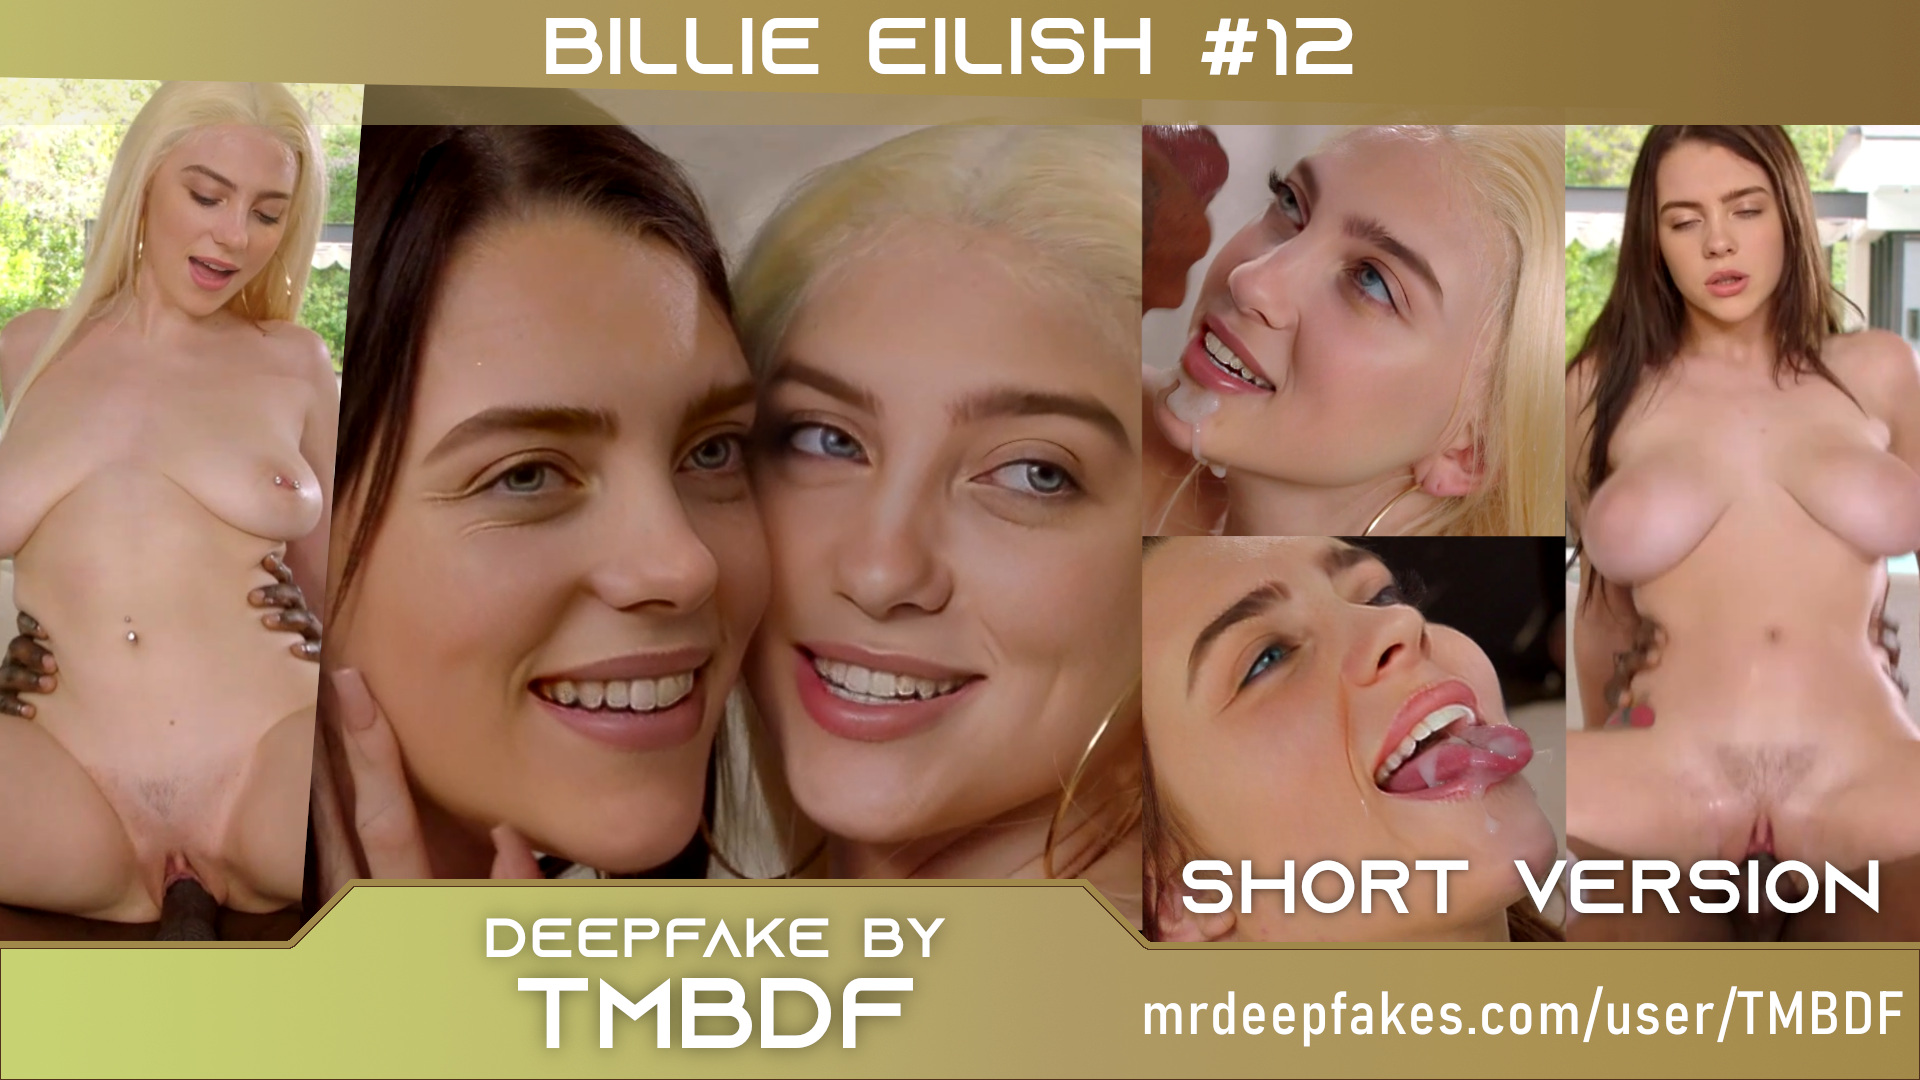 Threesome #4 - Billie Eilish #12 (clone/twin) - PREVIEW - Full version in description